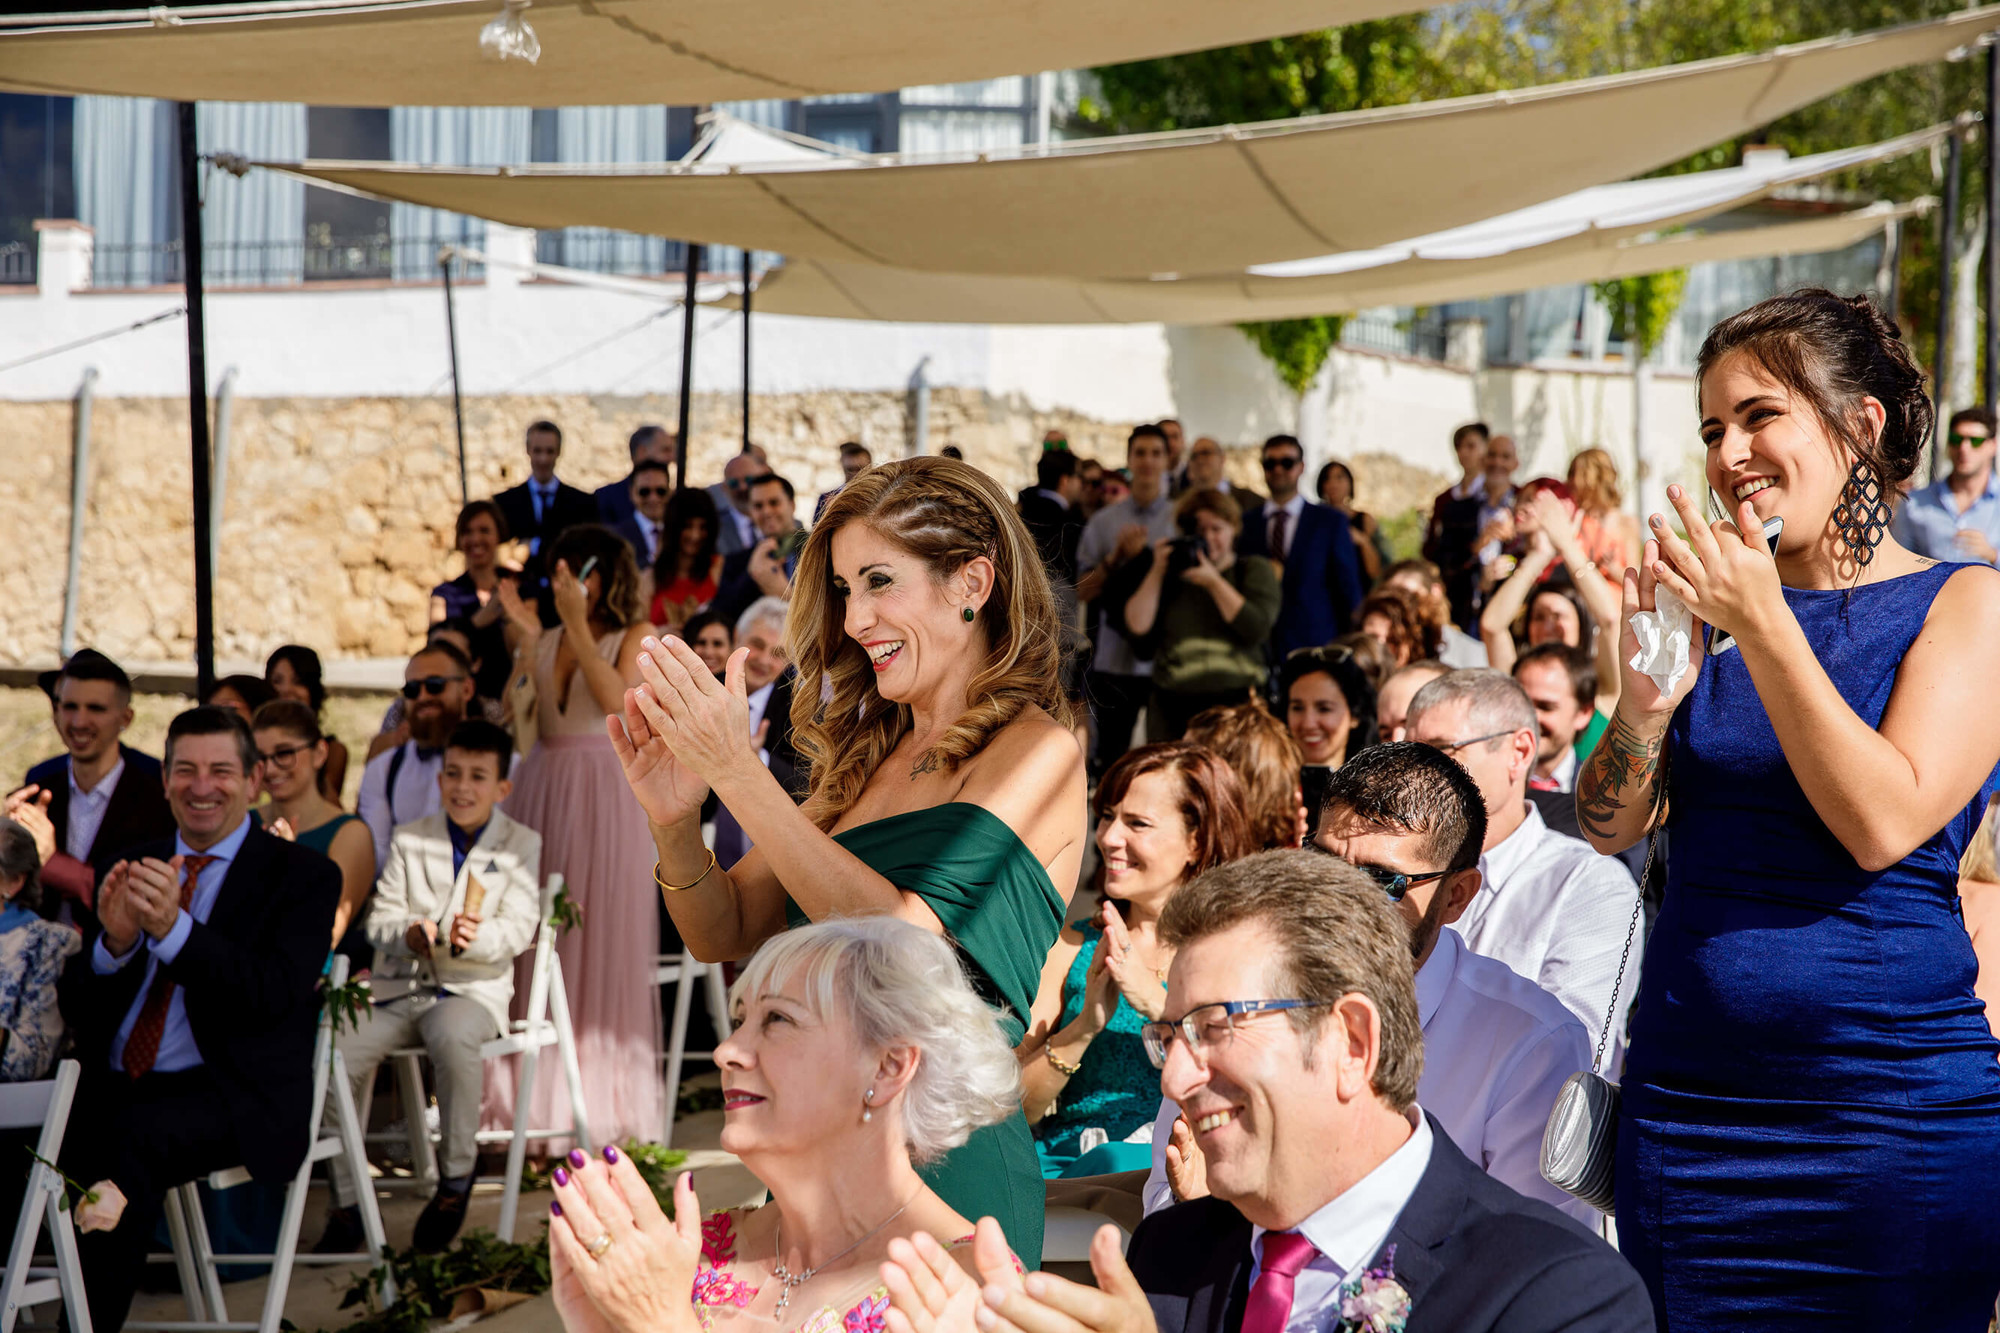 Nou Enfoc fotògrafs de boda de Vilafranca del Penedès a Barcelona - boda-masia-torreblanca-cal-blay-17.jpg